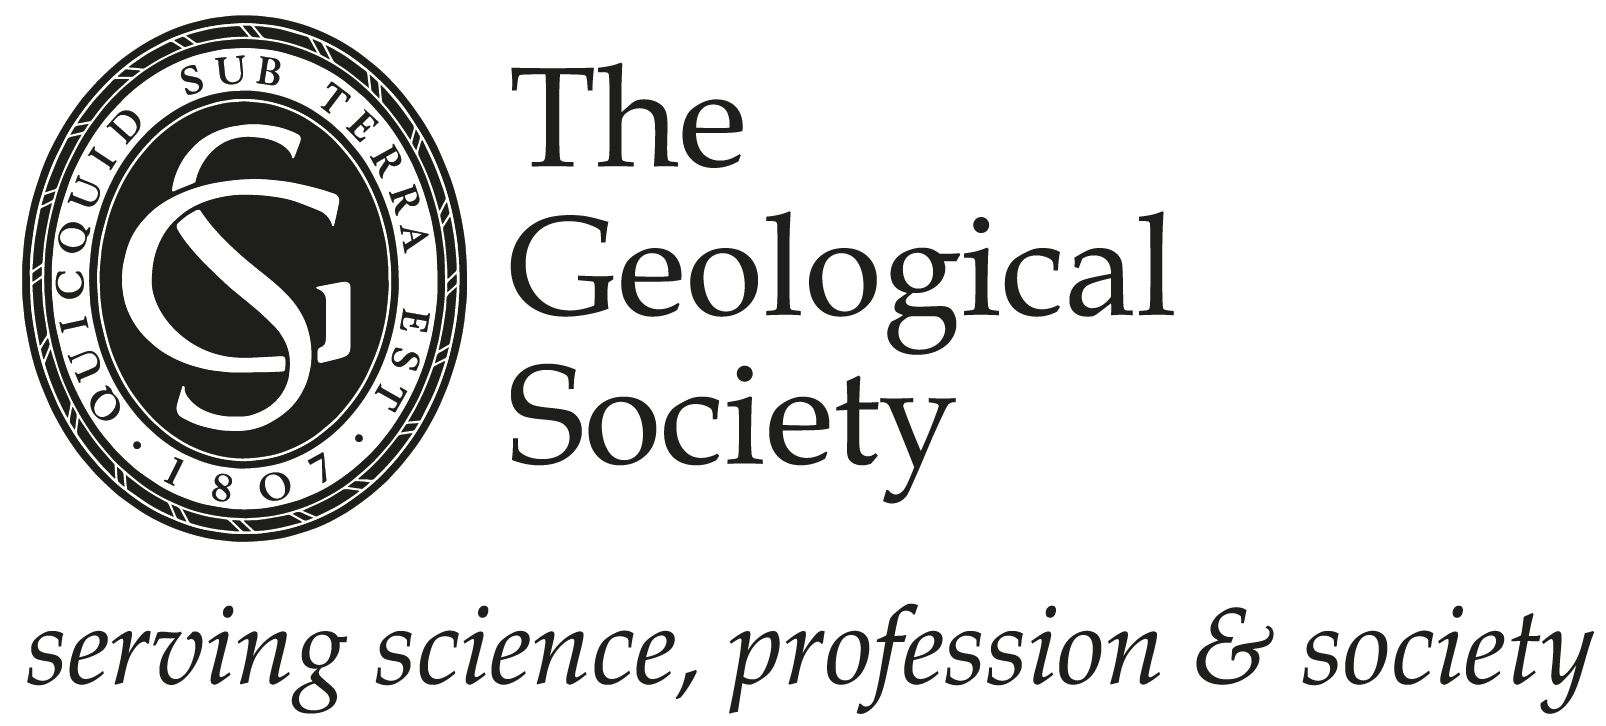 GSL（伦敦地质学会）